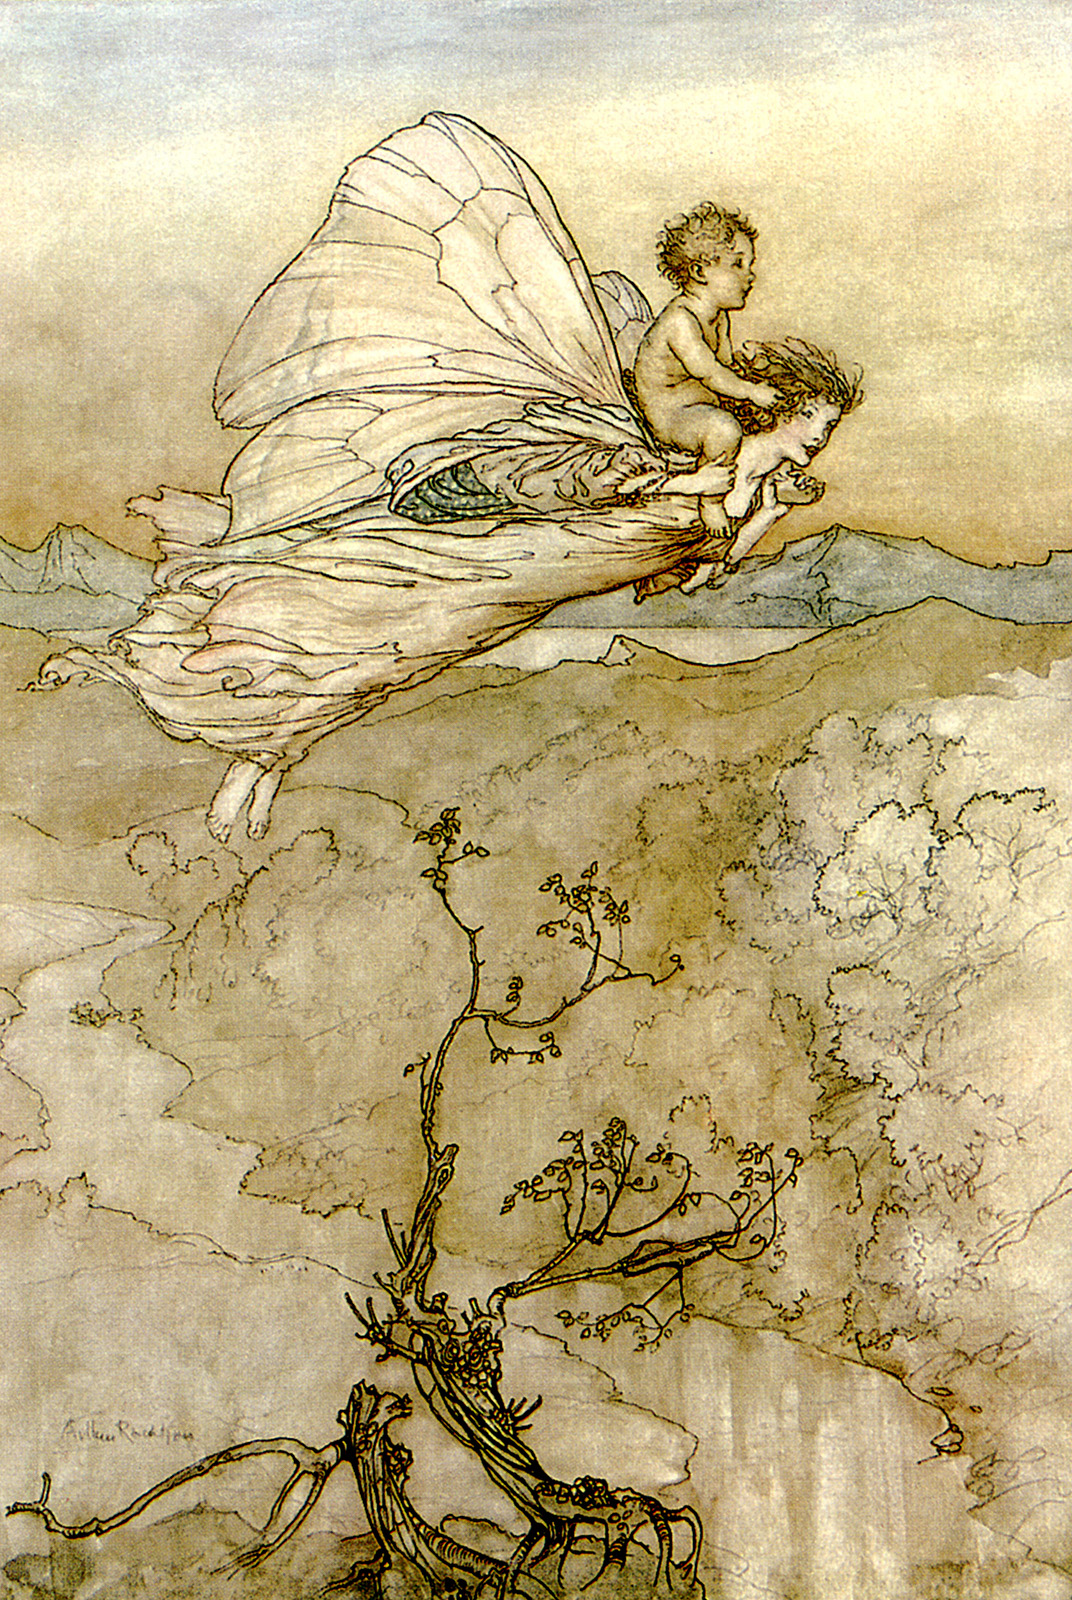 帶著孩子的仙女 by Arthur Rackham - 1907 